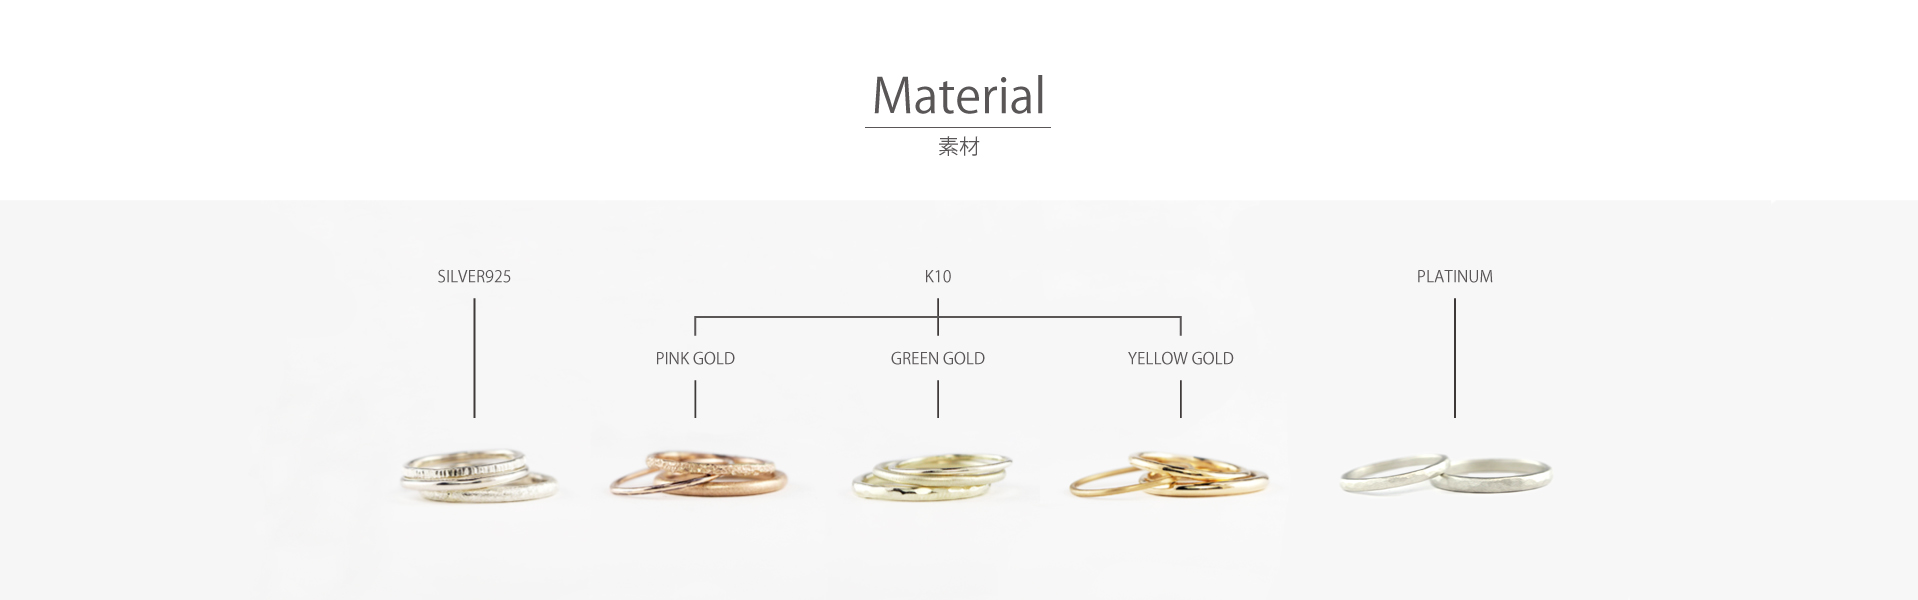 手作り指輪の素材はプラチナ・K18イエローゴールド・K18ピンクゴールド・K10イエローゴールド・K10ピンクゴールド・K10グリーンゴールド・シルバーをご用意しております。